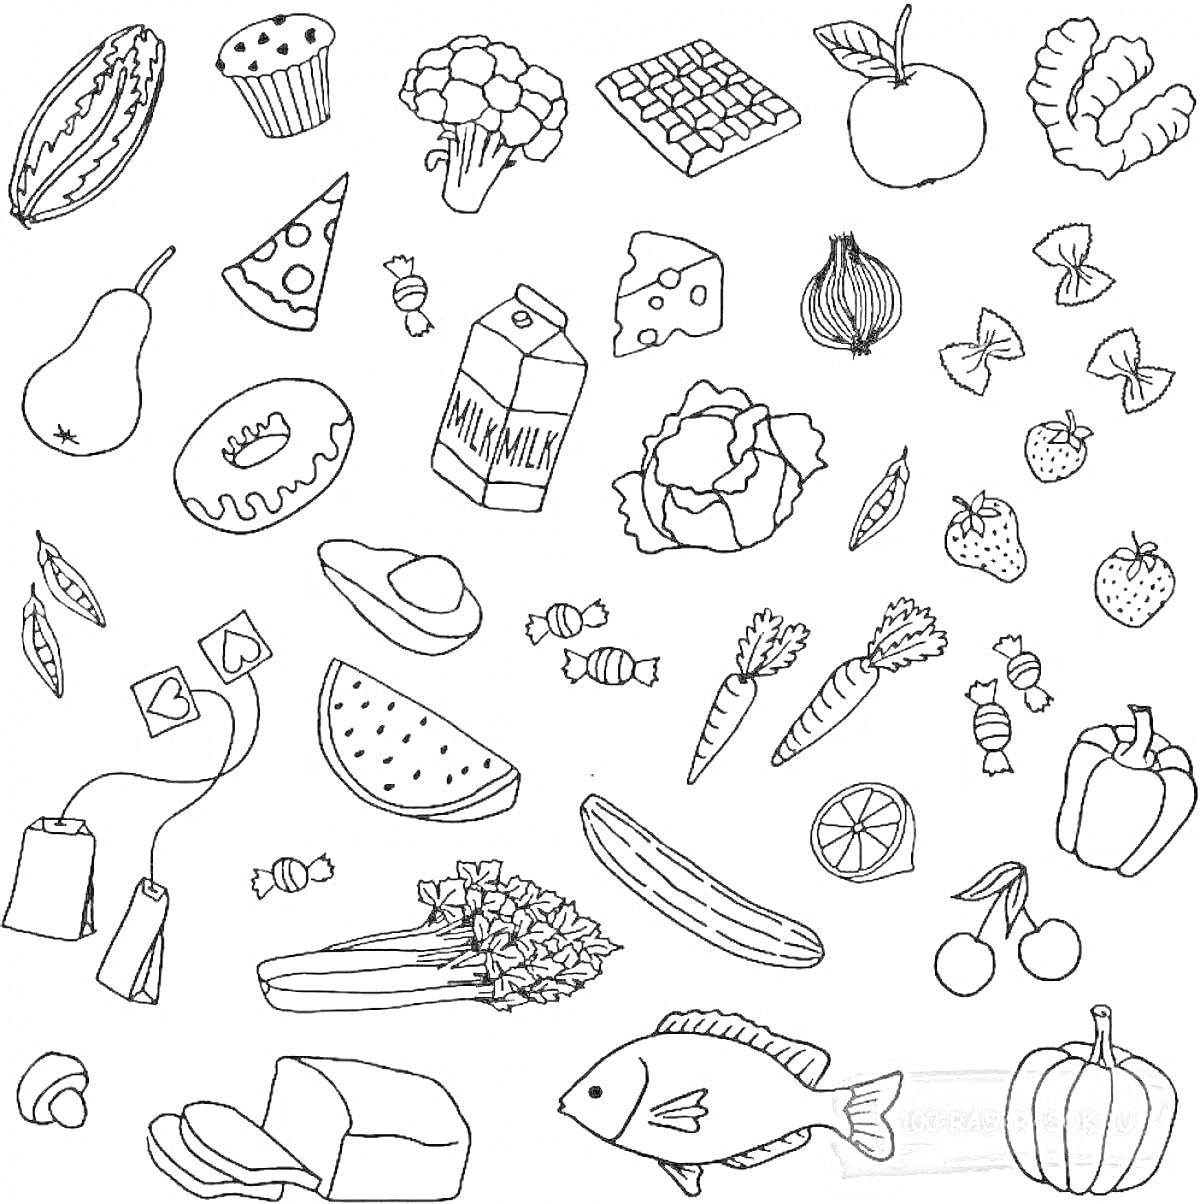 Раскраска Разнообразная эстетичная еда. На изображении: дыня, капуста, плитка шоколада, яблоко, кекс, ломтик пиццы, кусок сыра, черника, груша, молоко, помидор, капуста, лук, малосольные огурцы, клубника, листики базилика, конфеты, авокадо, крупа, морковь, лайм, ба